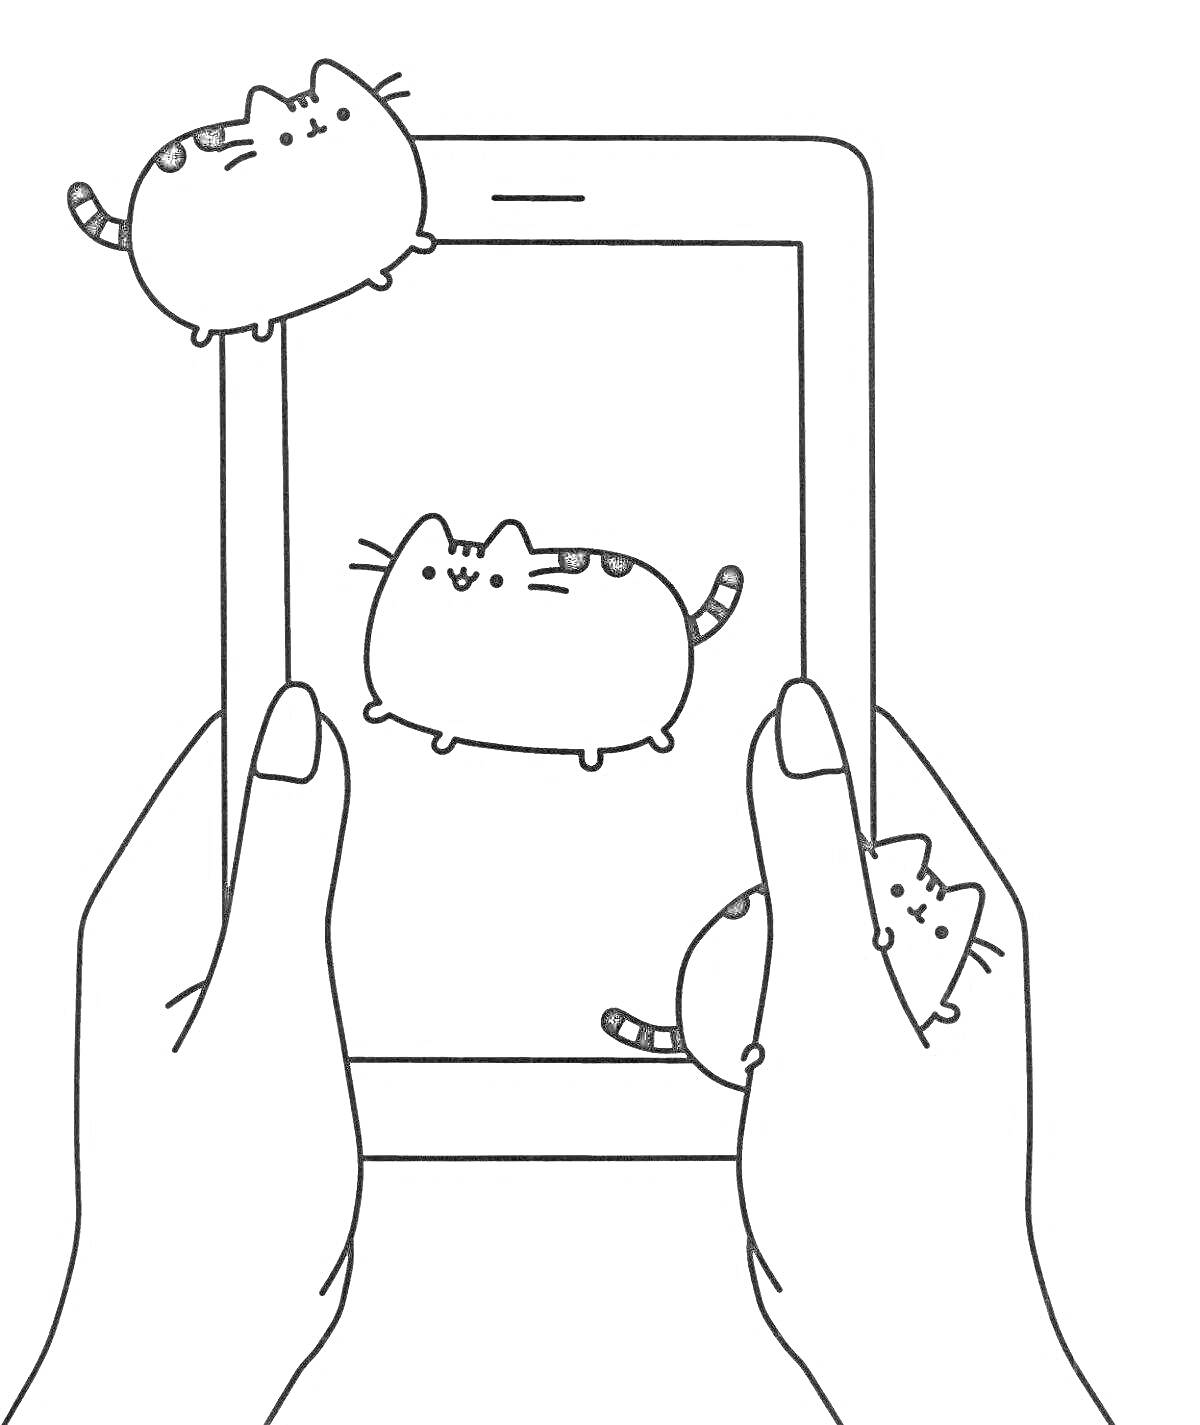 Раскраска Три котика на экране телефона, который держат руки